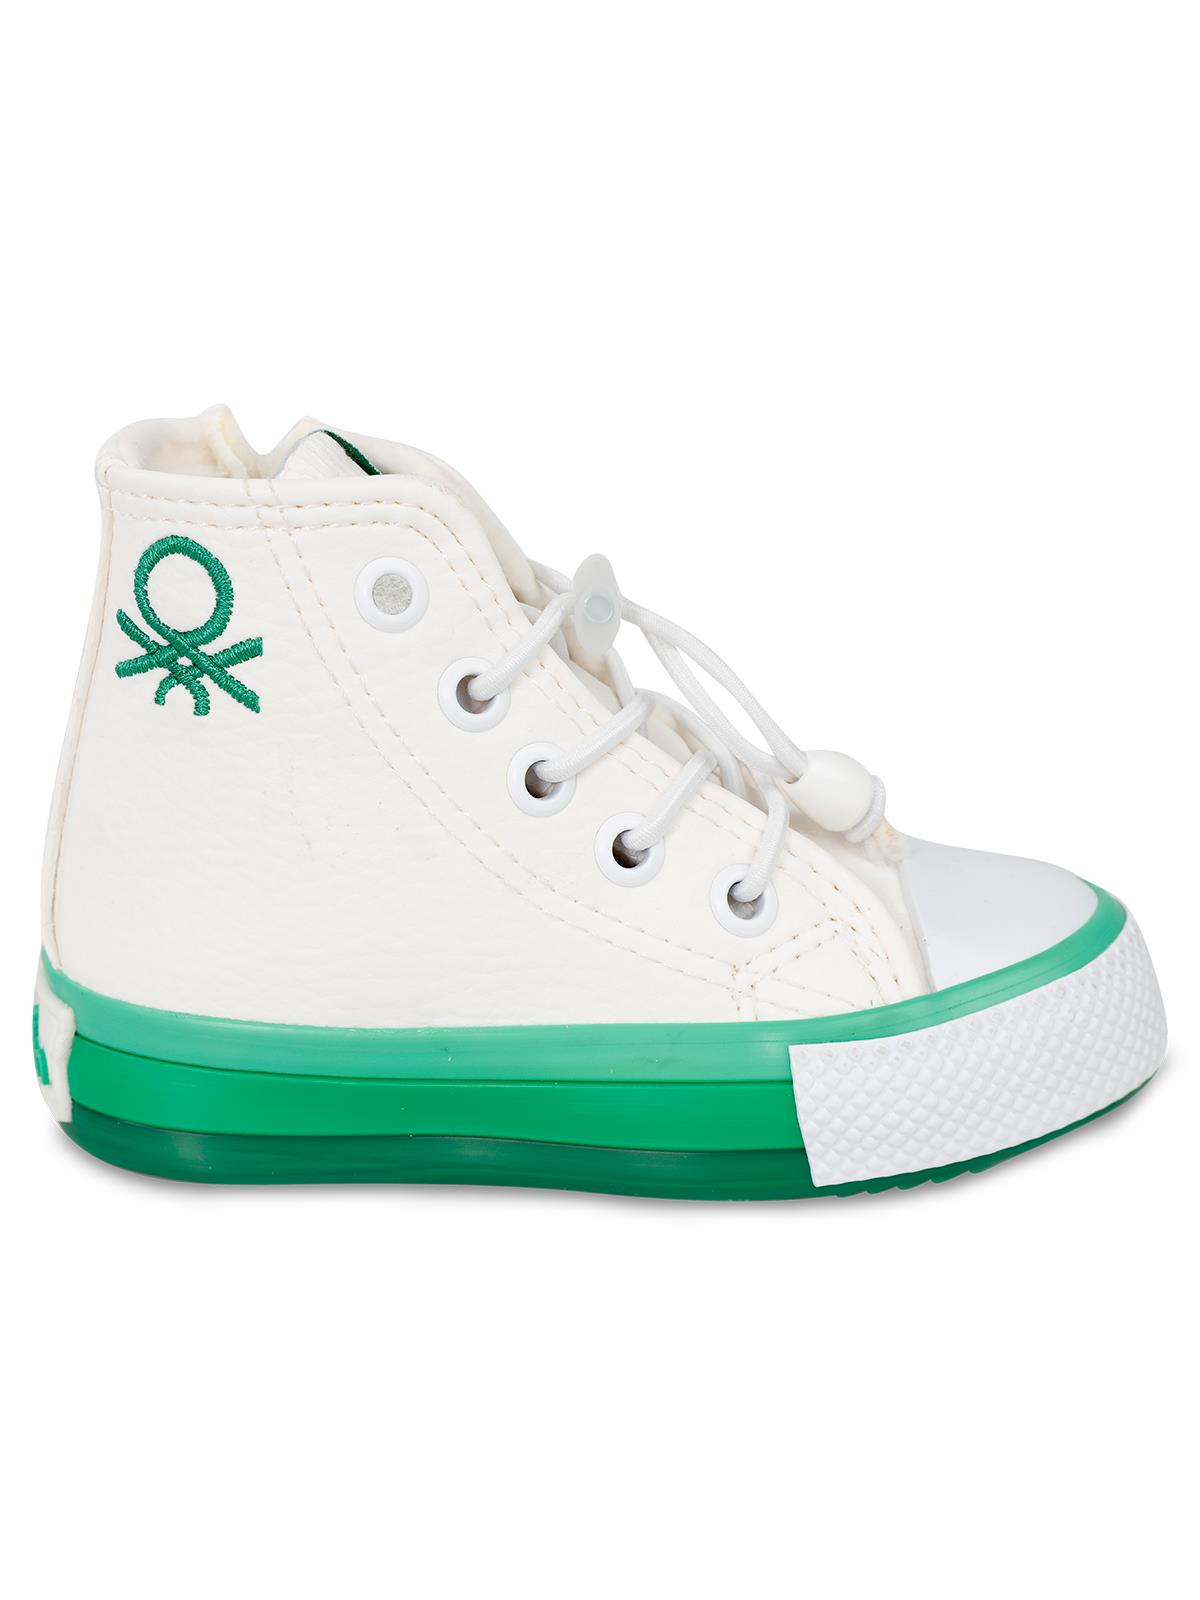 Benetton Erkek Çocuk Spor Ayakkabı 22-25 Numara Beyaz